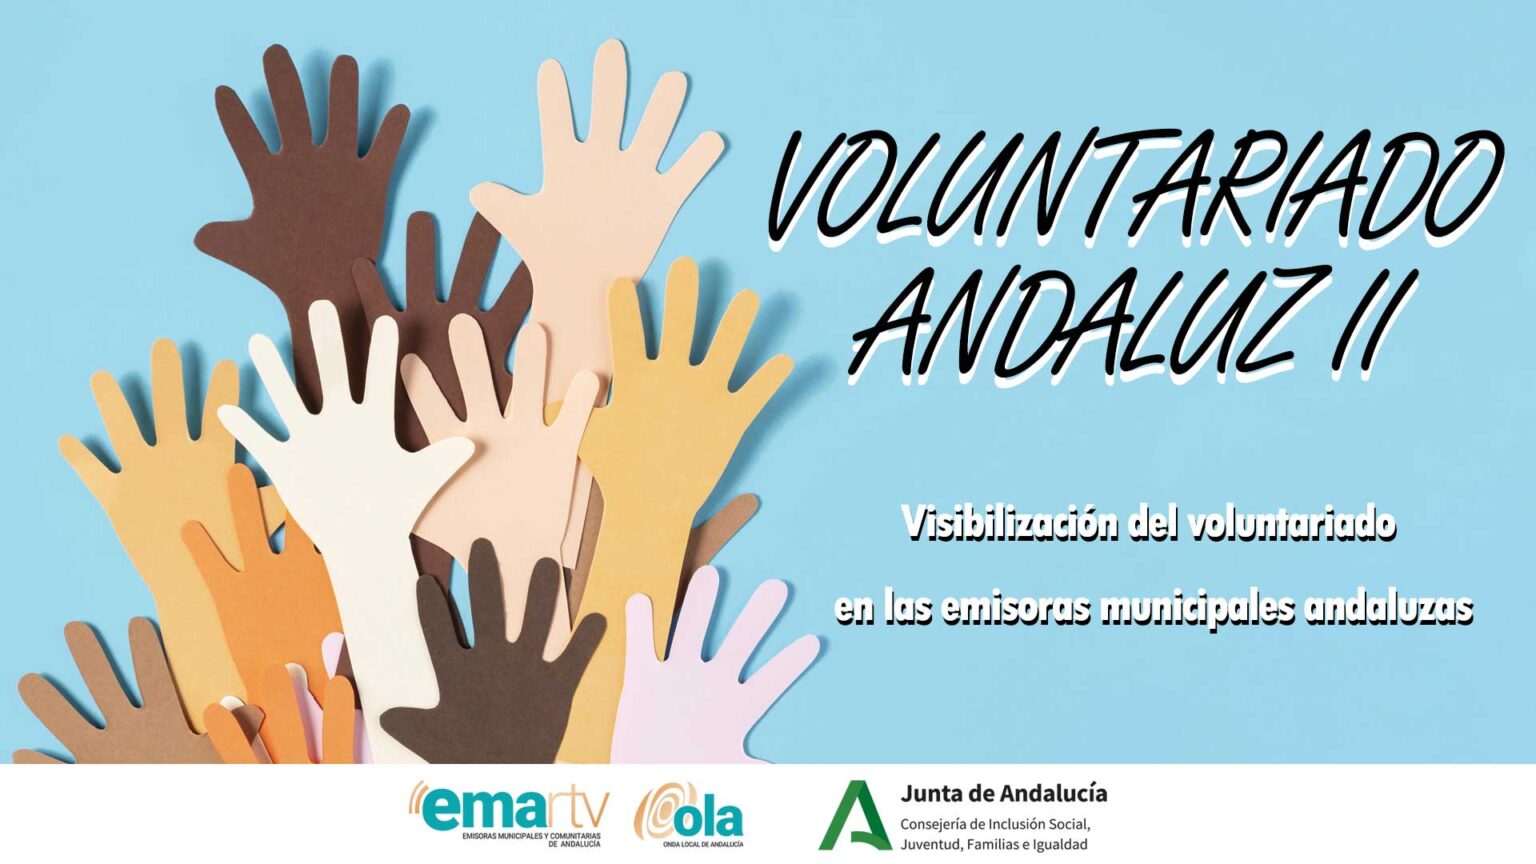 Voluntariado Andaluz II